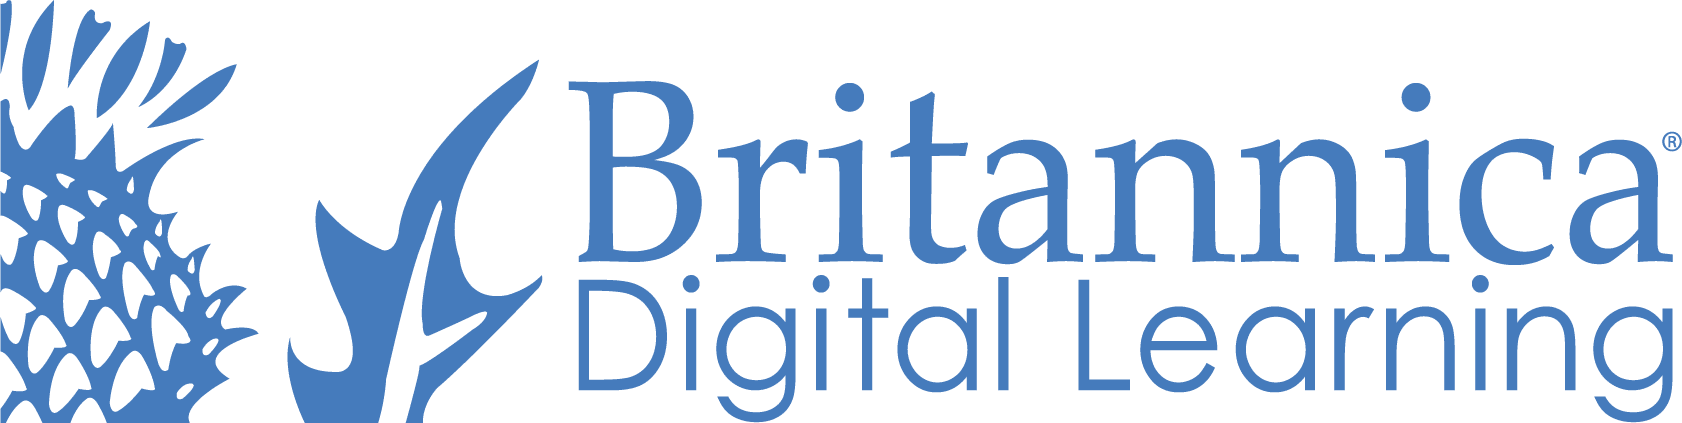 Britannica Digital Learning logo